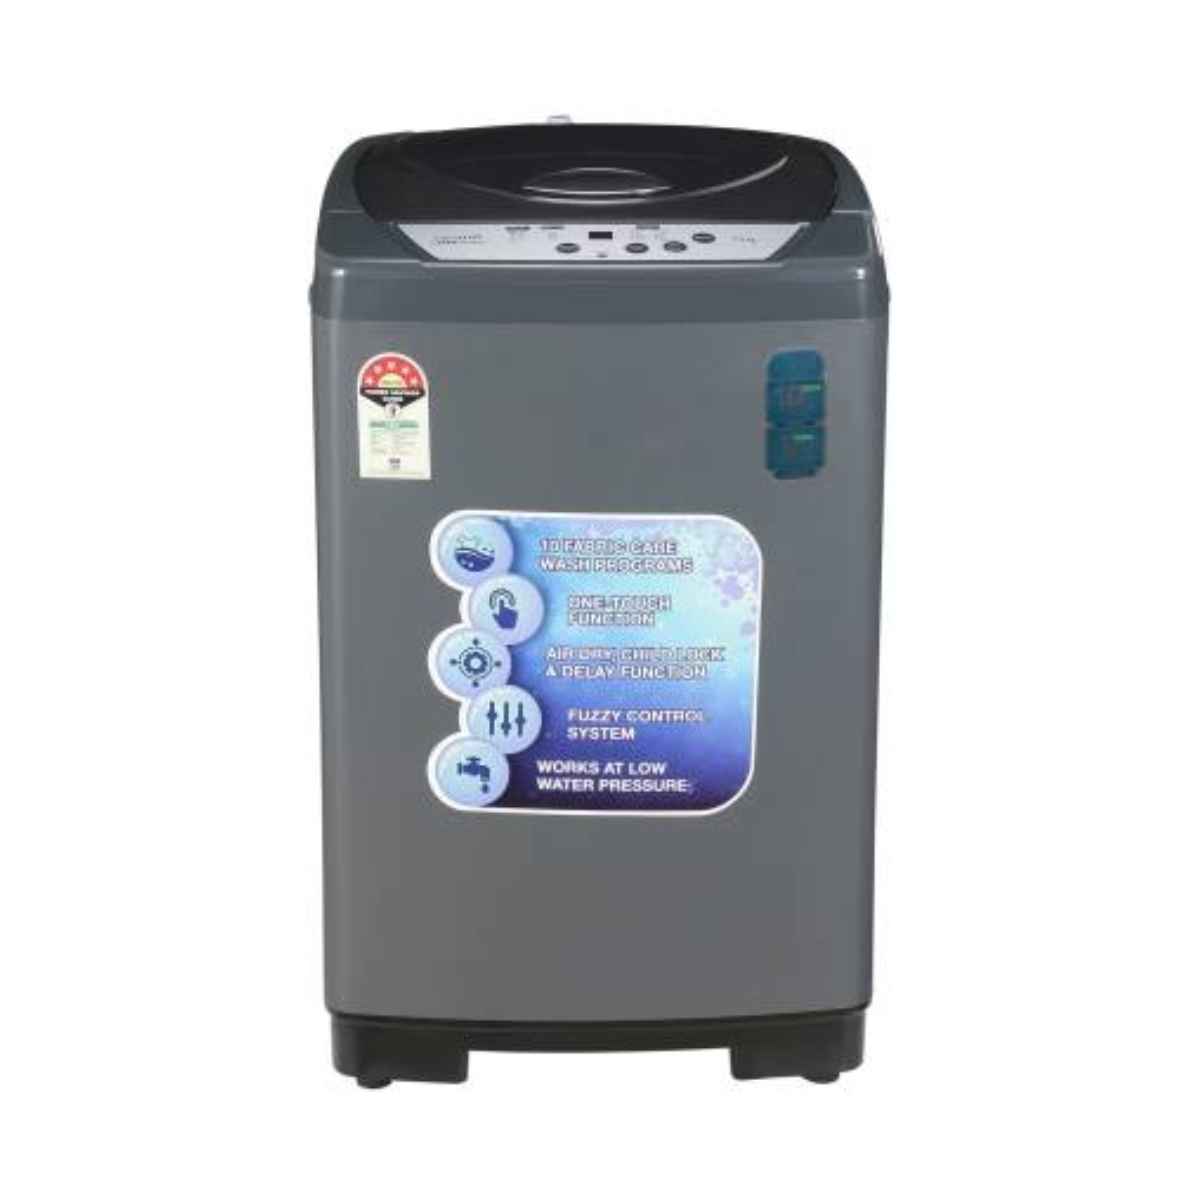 क्रोमा 7.5 kg Fully Automatic महत्त्वाचे Load washing machine (CRLWMD702STL75) 